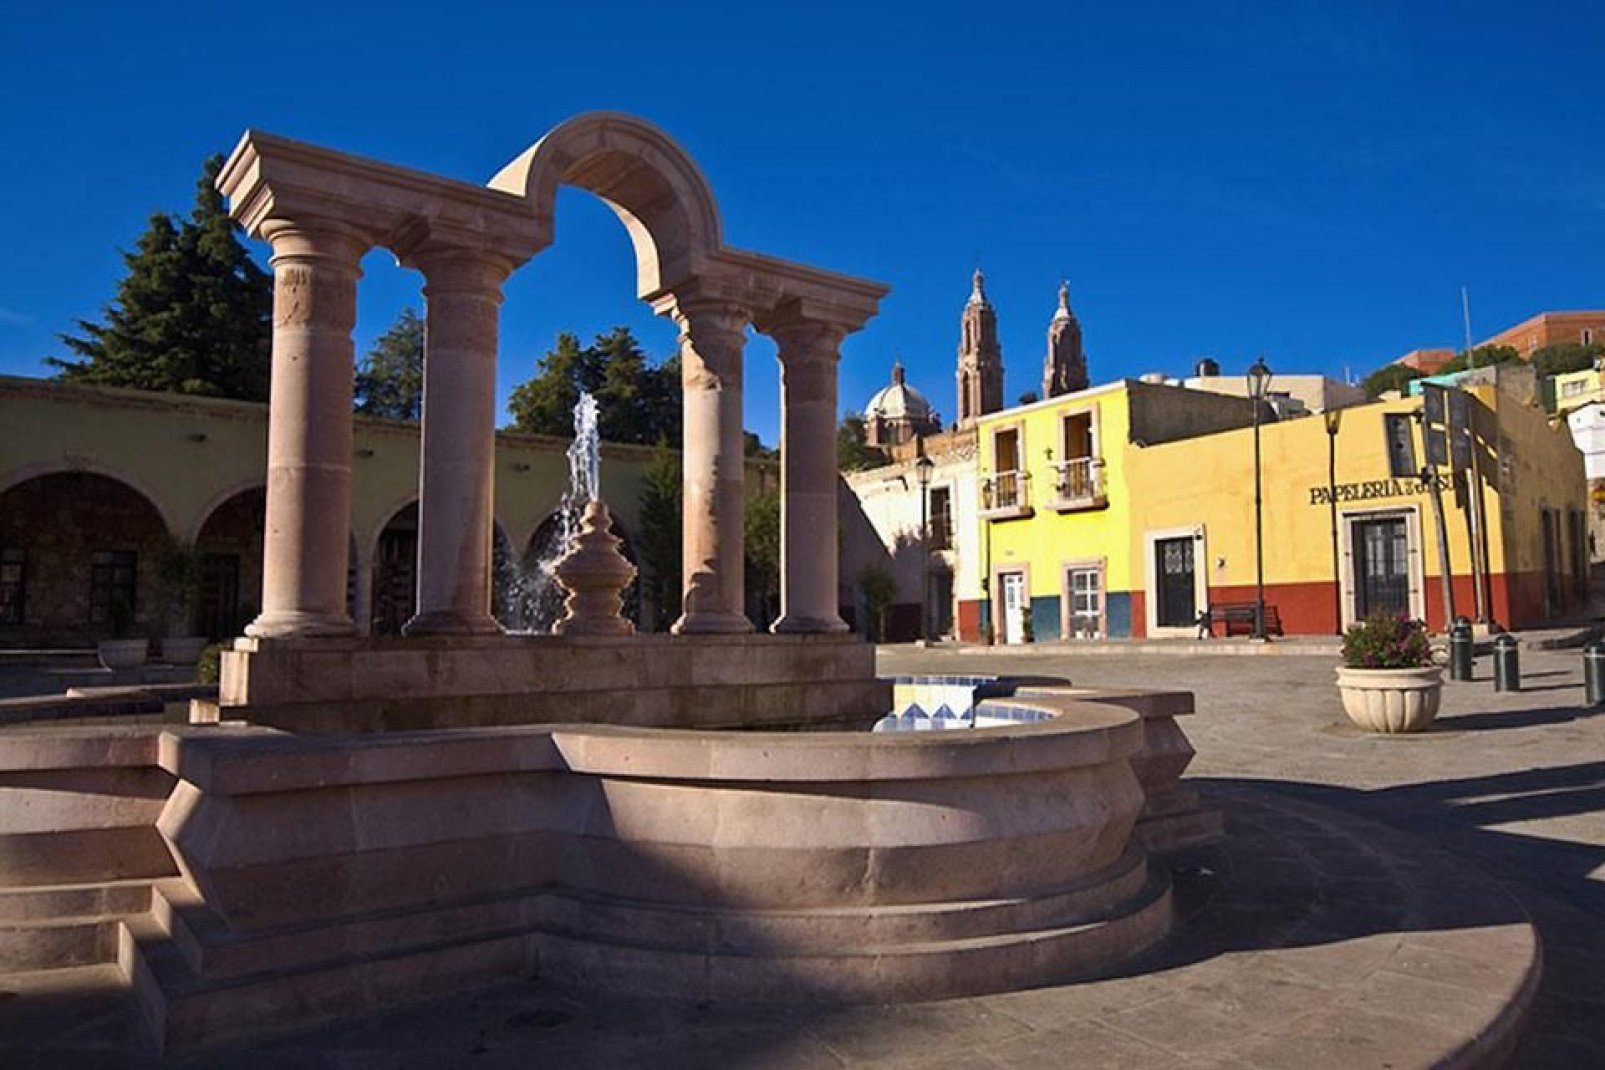 Il centro della città è Plaza de Armas, piccola piazza circondata dalla Cattedrale e dal Palazzo del Governatore. Tuttavia all'interno della città, ci sono molte altre piazzette.